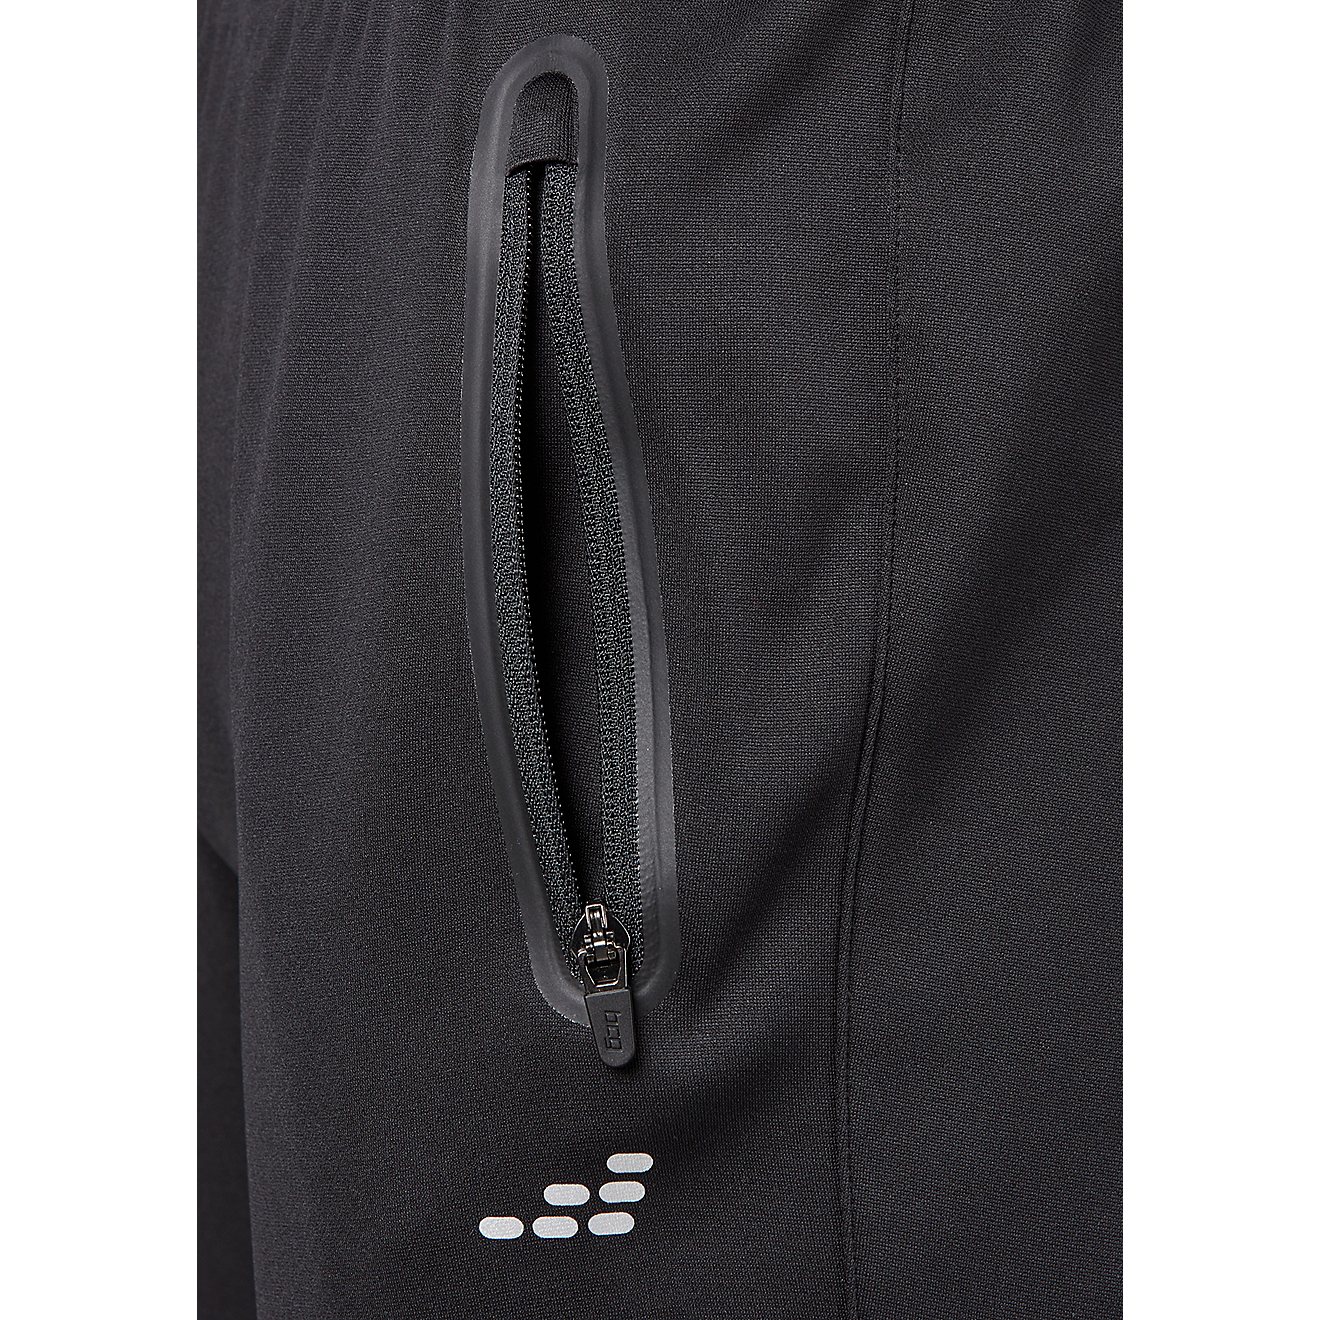 BCG Men's Tapered Bonded Zipper Fleece Pants                                                                                     - view number 3